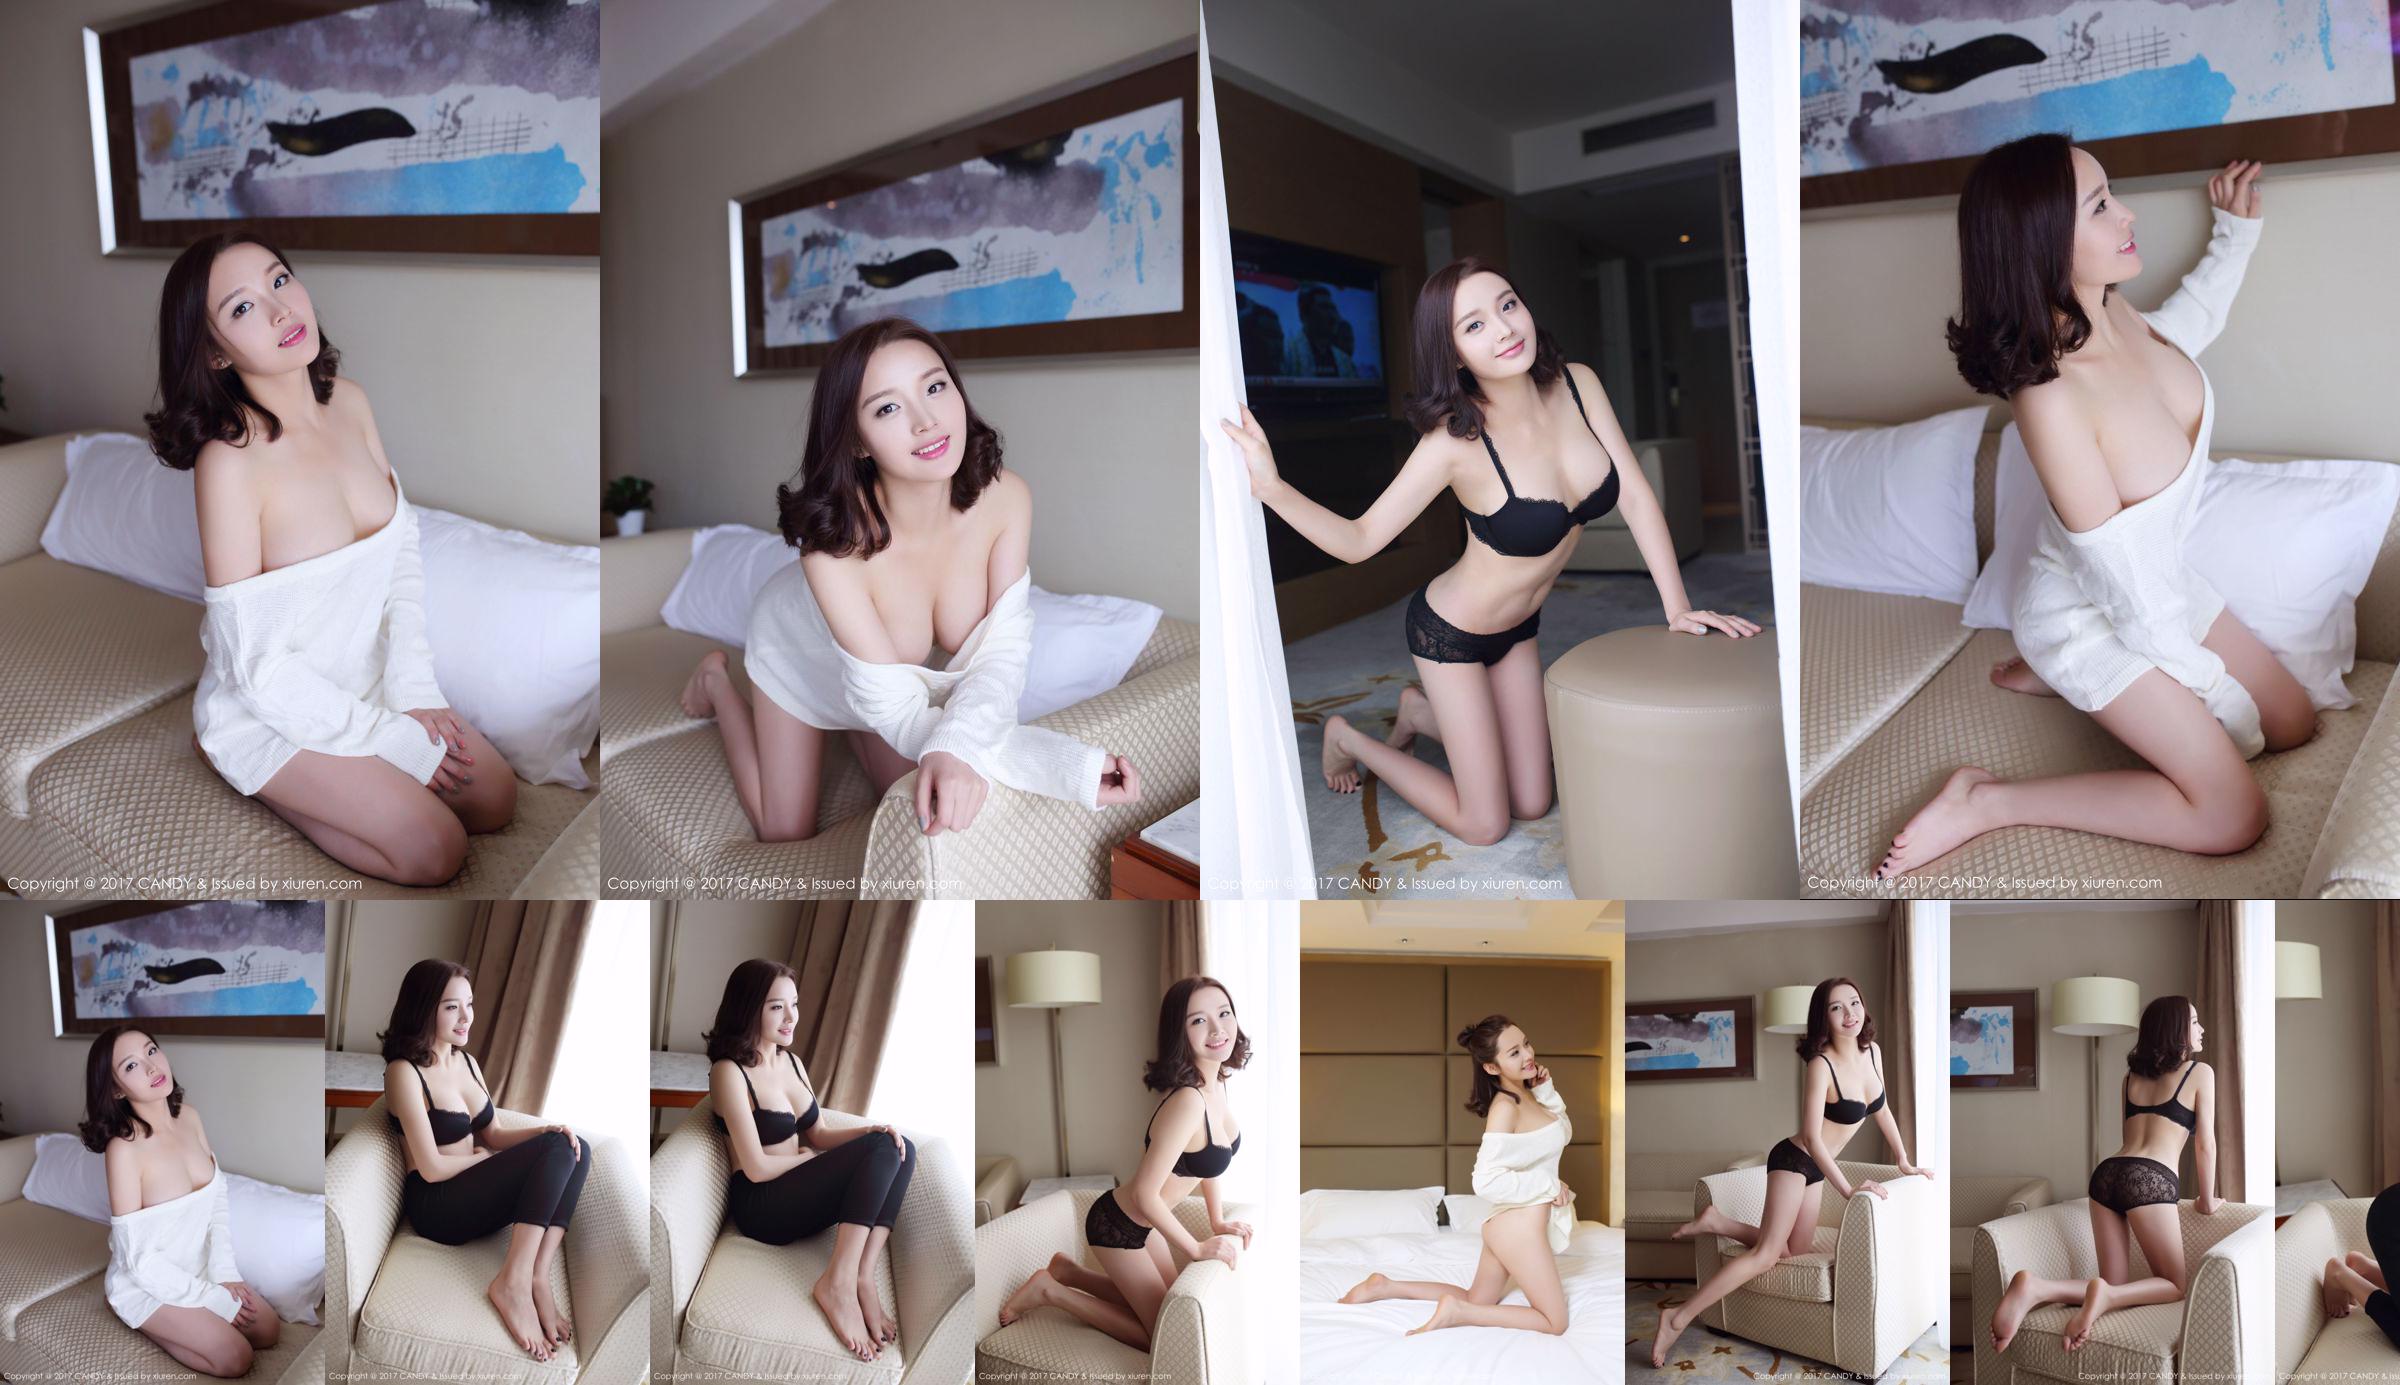 Wang Shiqi "La bella ragazza della porta accanto" [Candy Pictorial CANDY] Vol.033 No.405913 Pagina 23